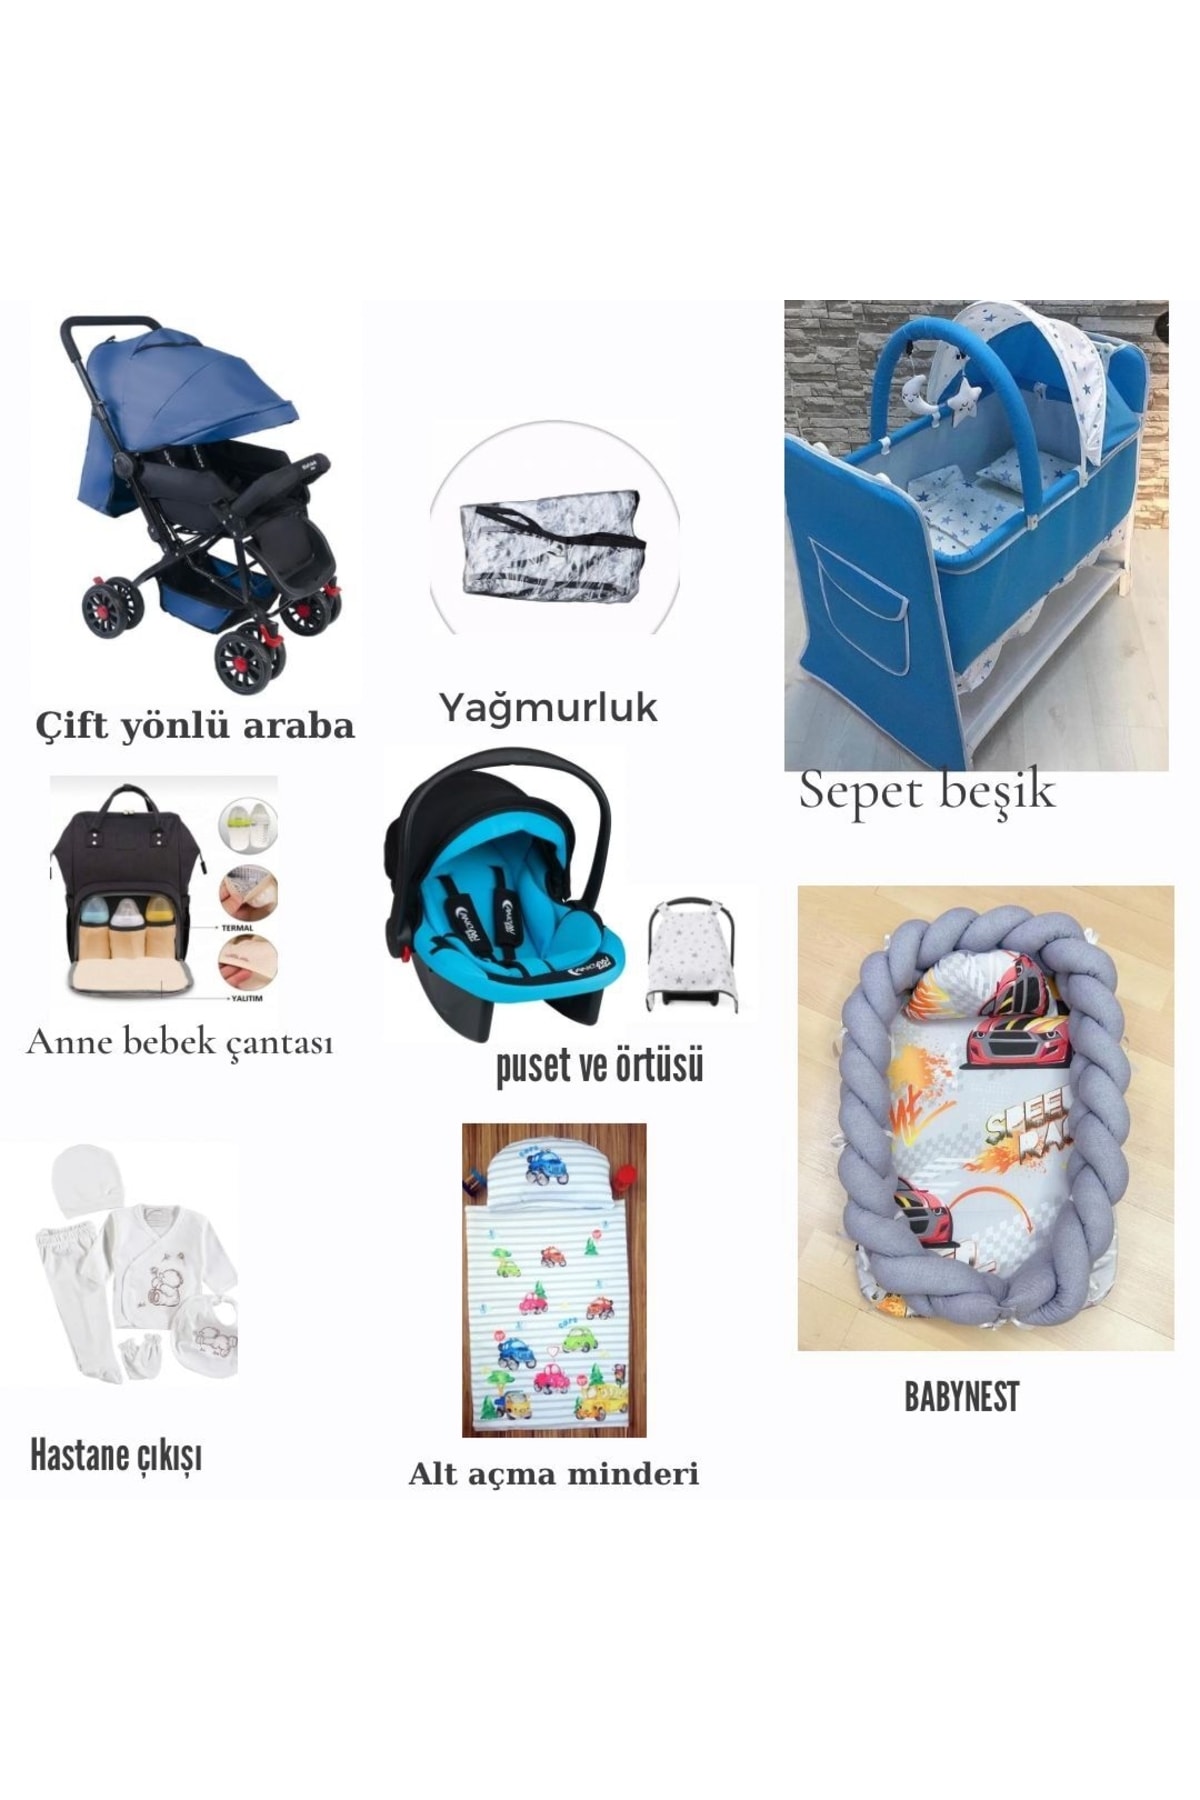 ALDEBA Lüx Beşik Babynest Bebek Arabası Puset Hastane Çıkışı SN9132